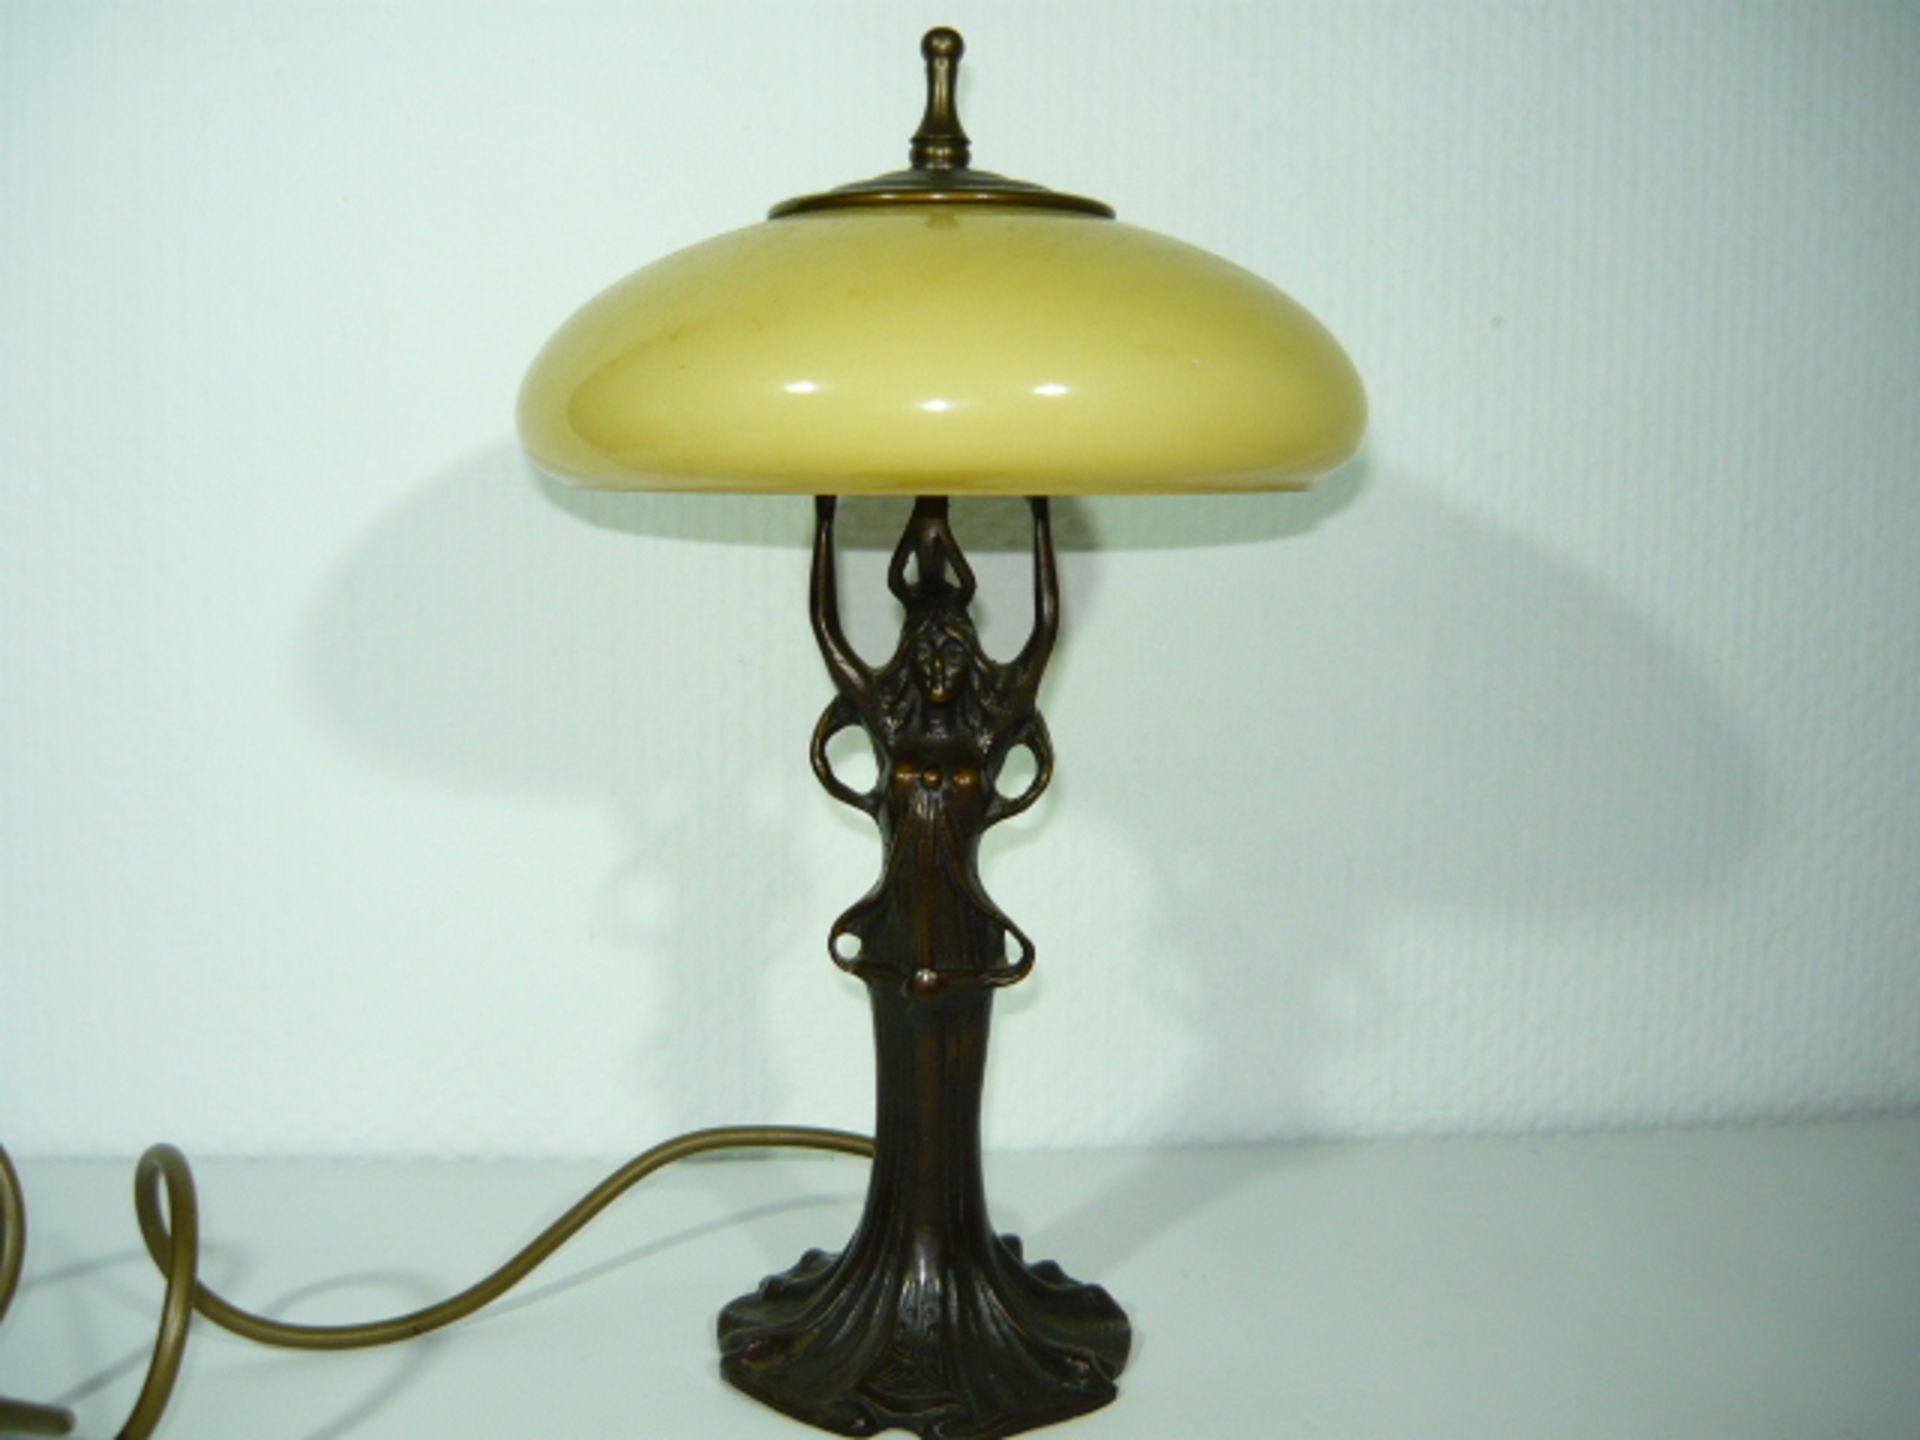 Tischlampe mit Glasschirm. Fuß in Form einer Frau im Jugendstil. Bronze. Lampe leuchtet.